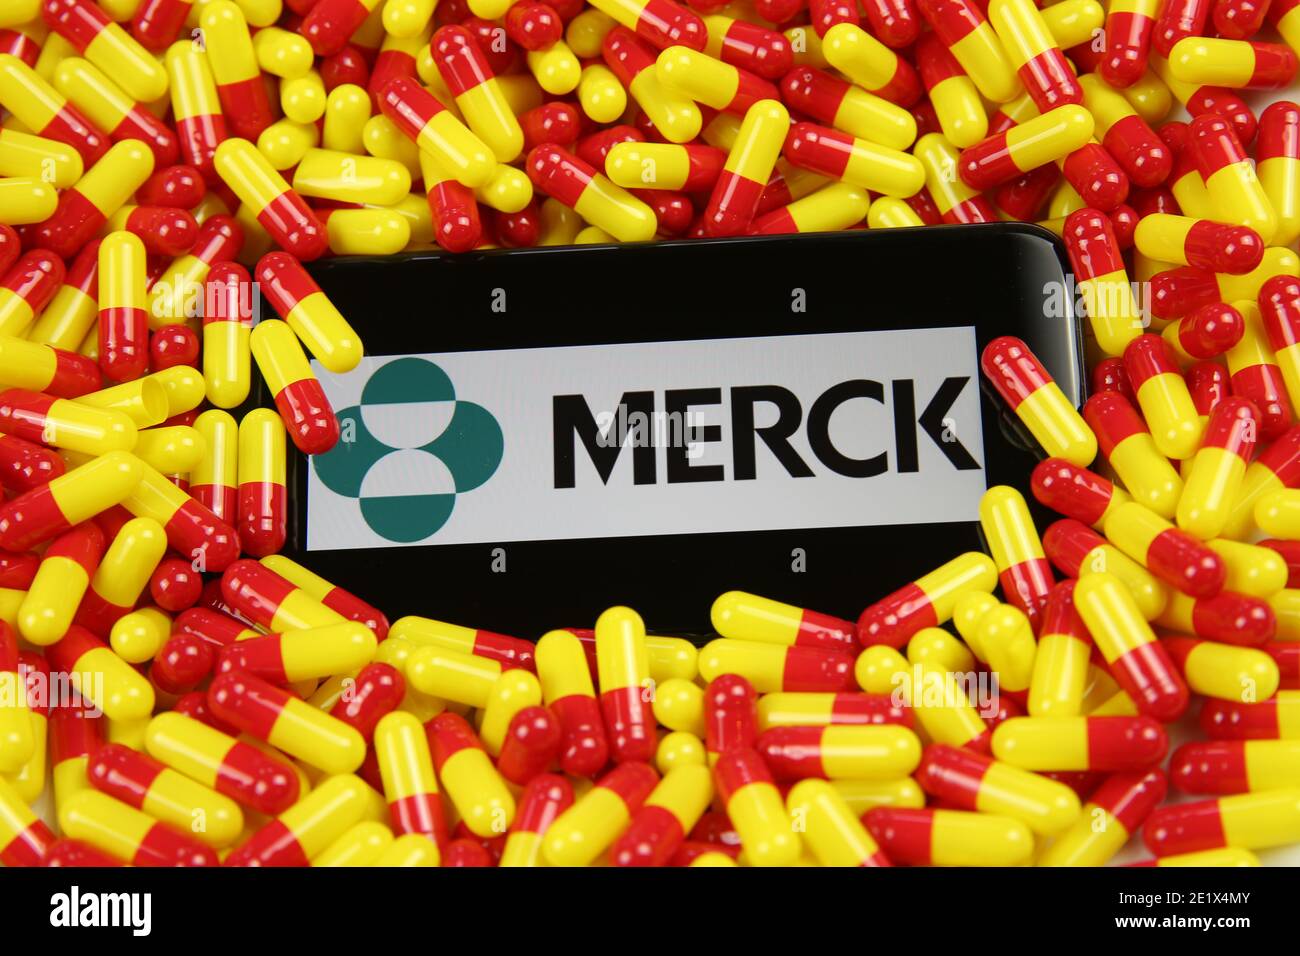 Viersen, Germania - 9 aprile. 2020: Primo piano dello schermo del telefono cellulare con la scritta del logo della società farmaceutica Merck su capsule di farmaco rosse in pile gialle Foto Stock